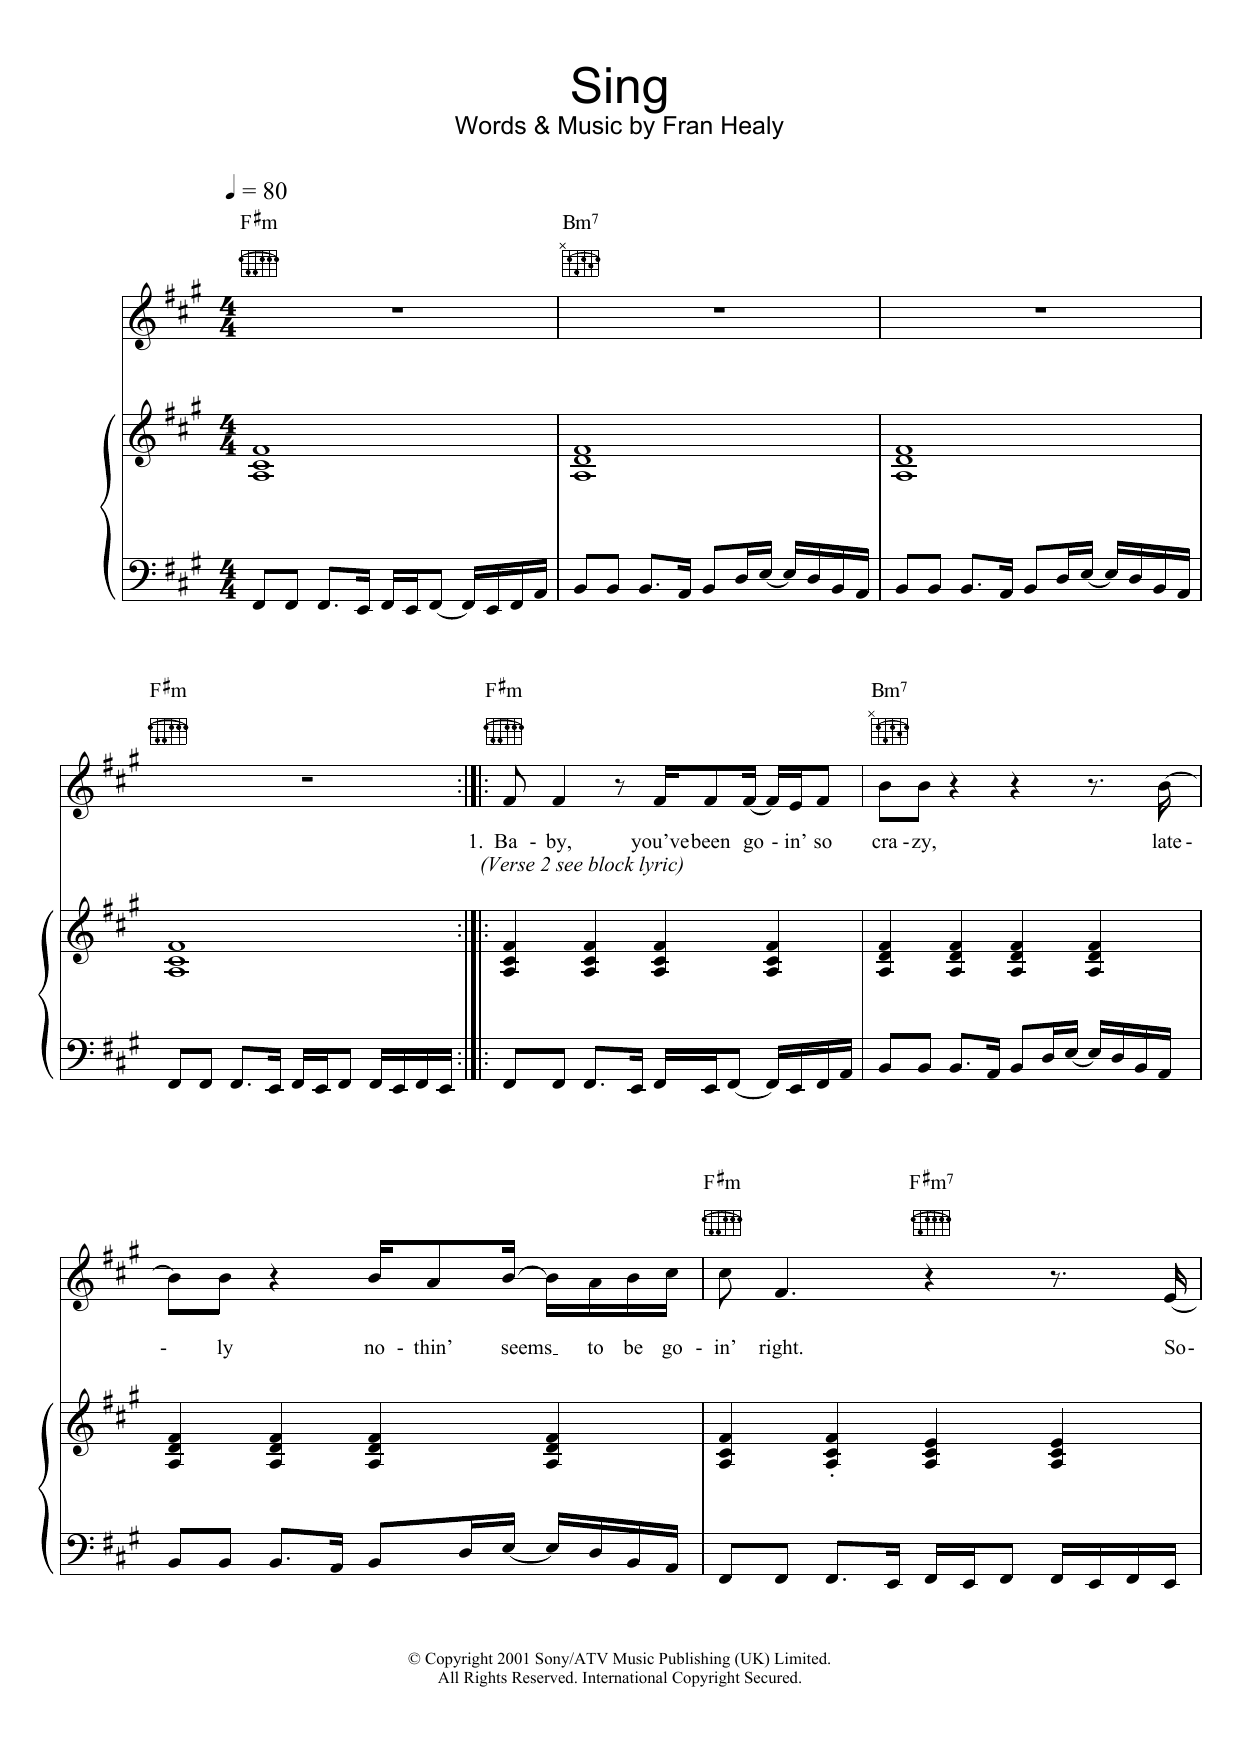 Travis Sing Sheet Music Notes & Chords for Keyboard - Download or Print PDF